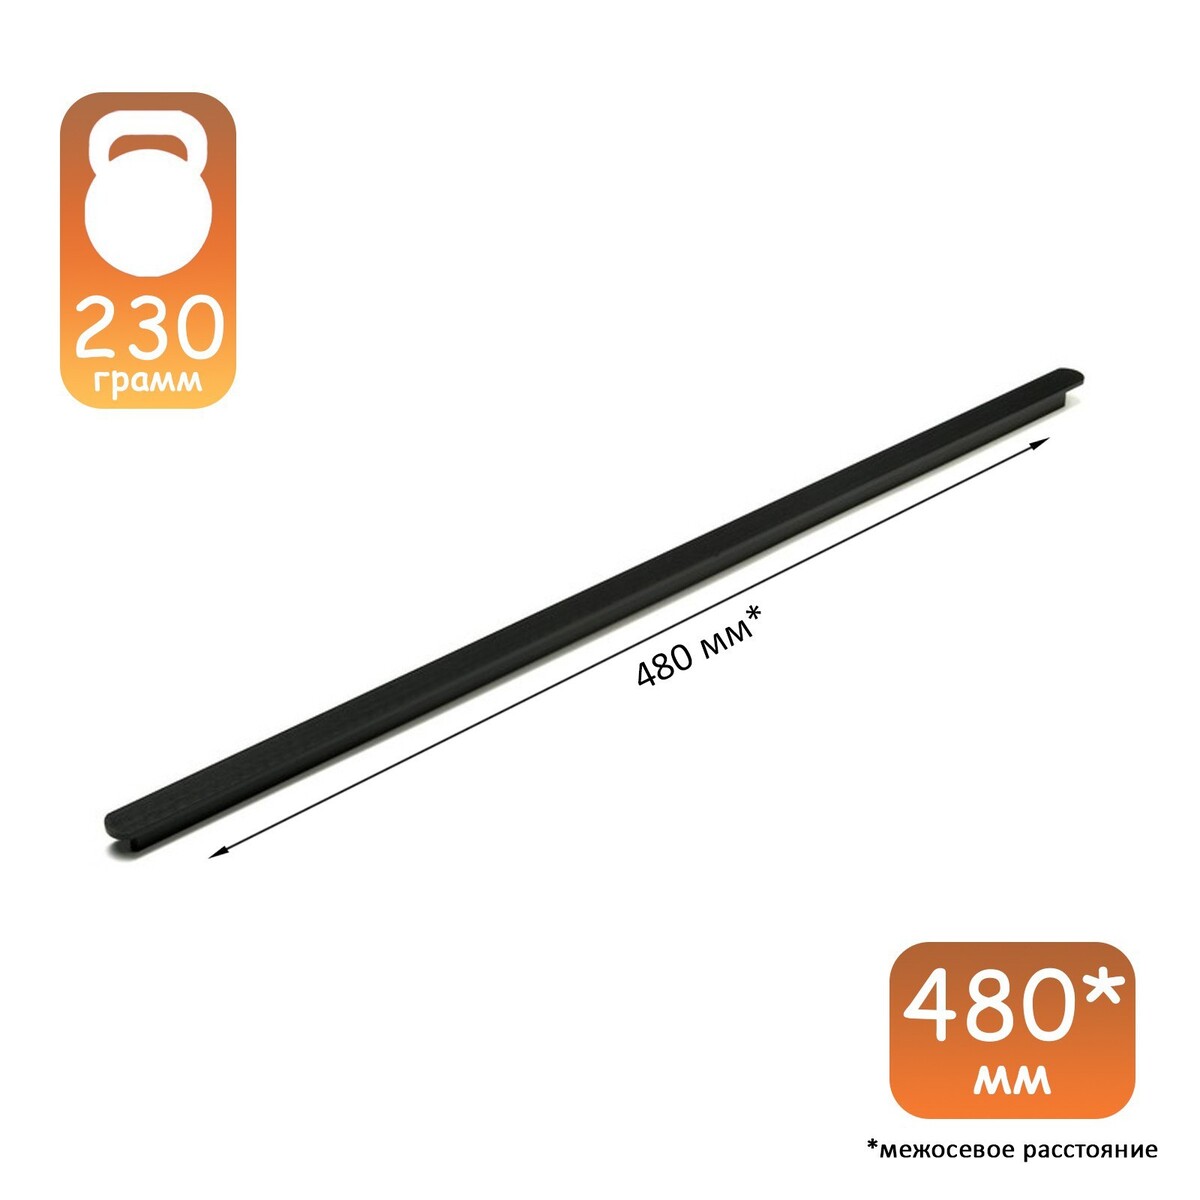 Ручка-скоба cappio rsc021, алюминий, м/о 480 мм, цвет черный